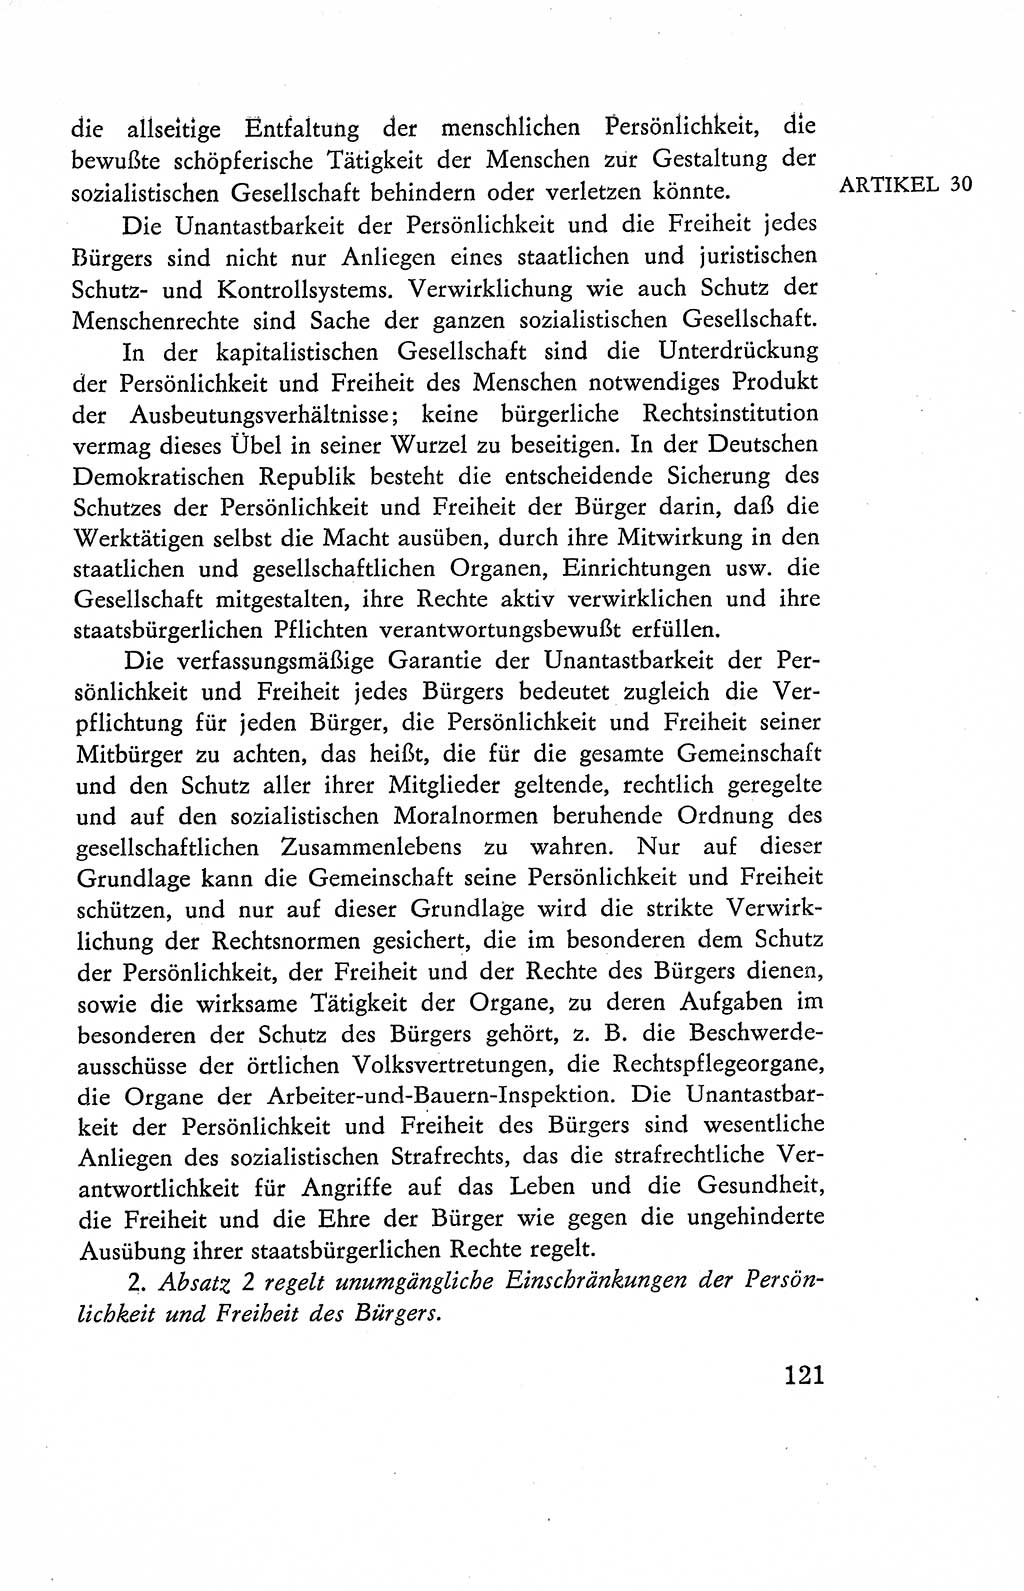 Verfassung der Deutschen Demokratischen Republik (DDR), Dokumente, Kommentar 1969, Band 2, Seite 121 (Verf. DDR Dok. Komm. 1969, Bd. 2, S. 121)